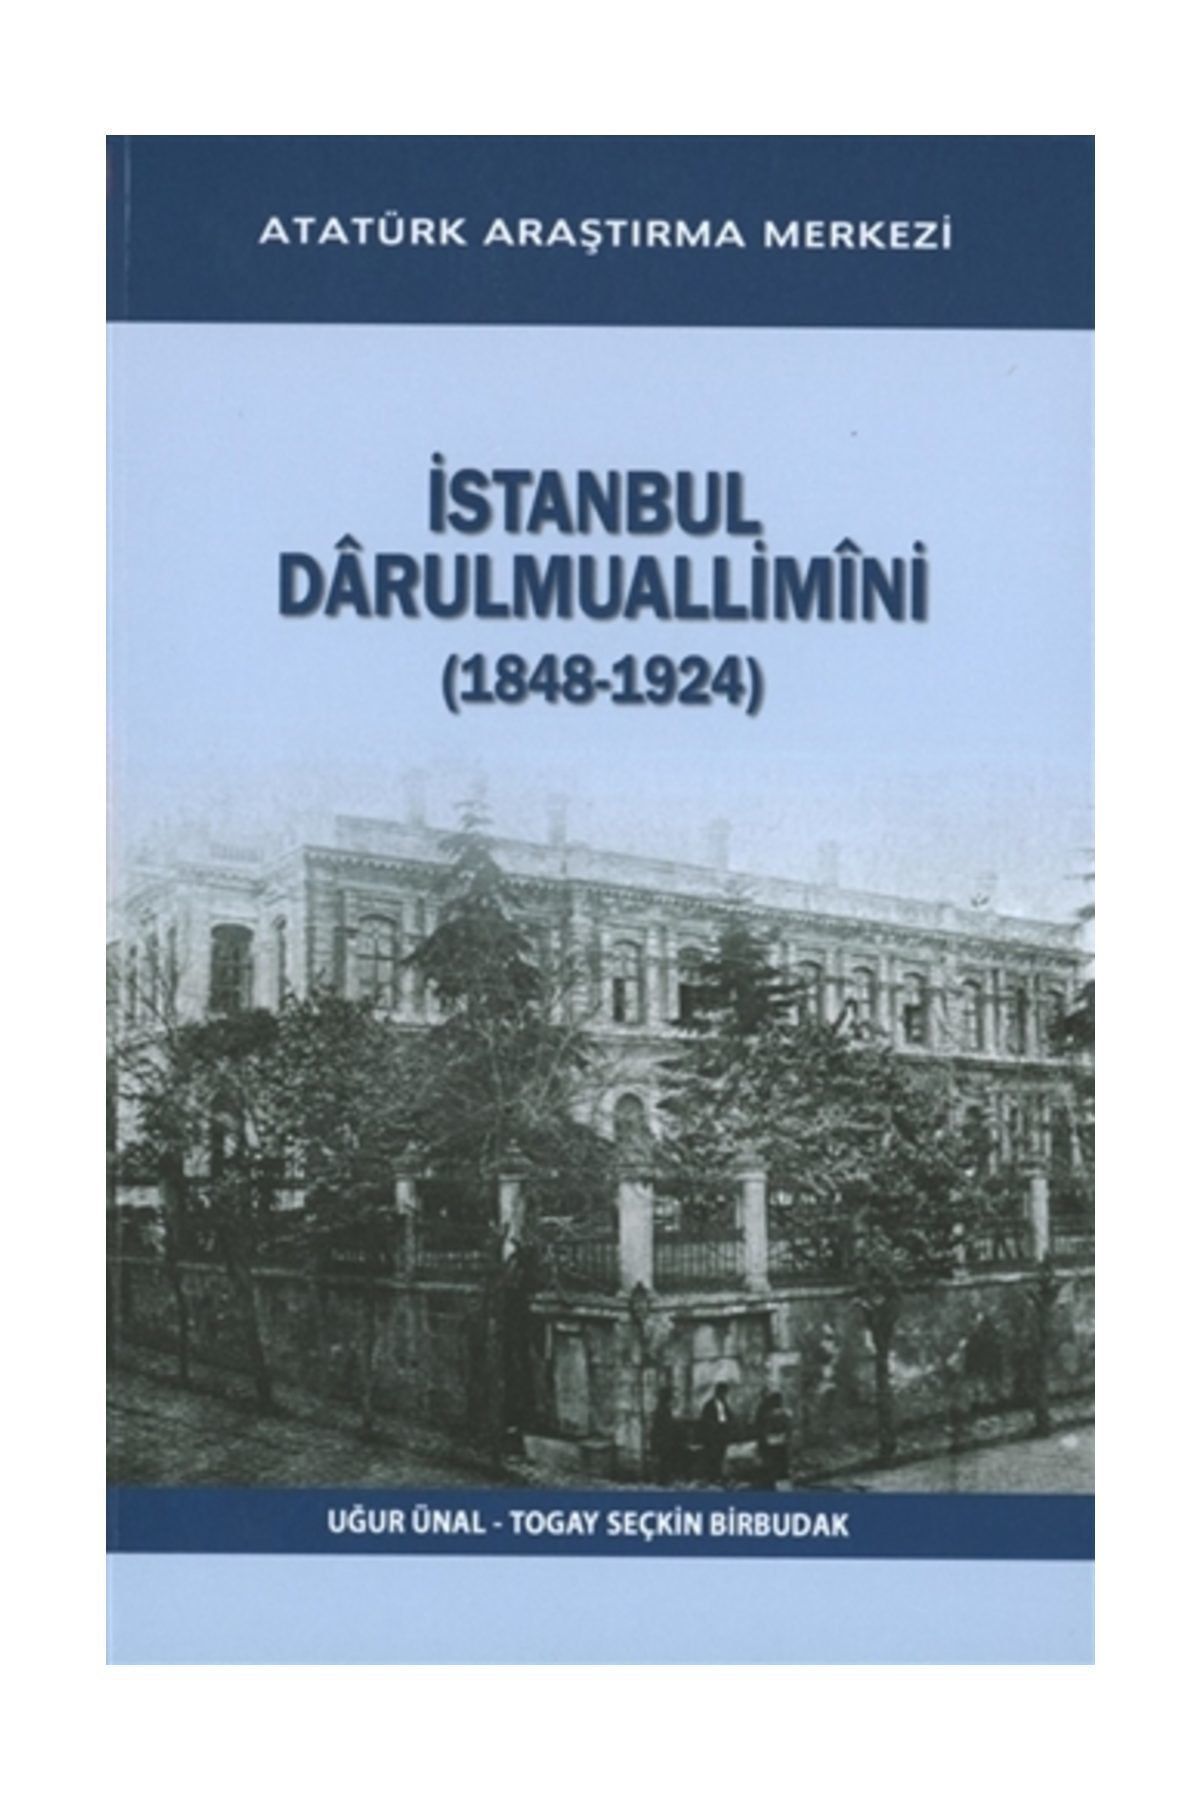 Atatürk Araştırma Merkezi İstanbul Darulmuallimini (1848-1924) - Togay Seçkin Birbudak,Uğur Ünal